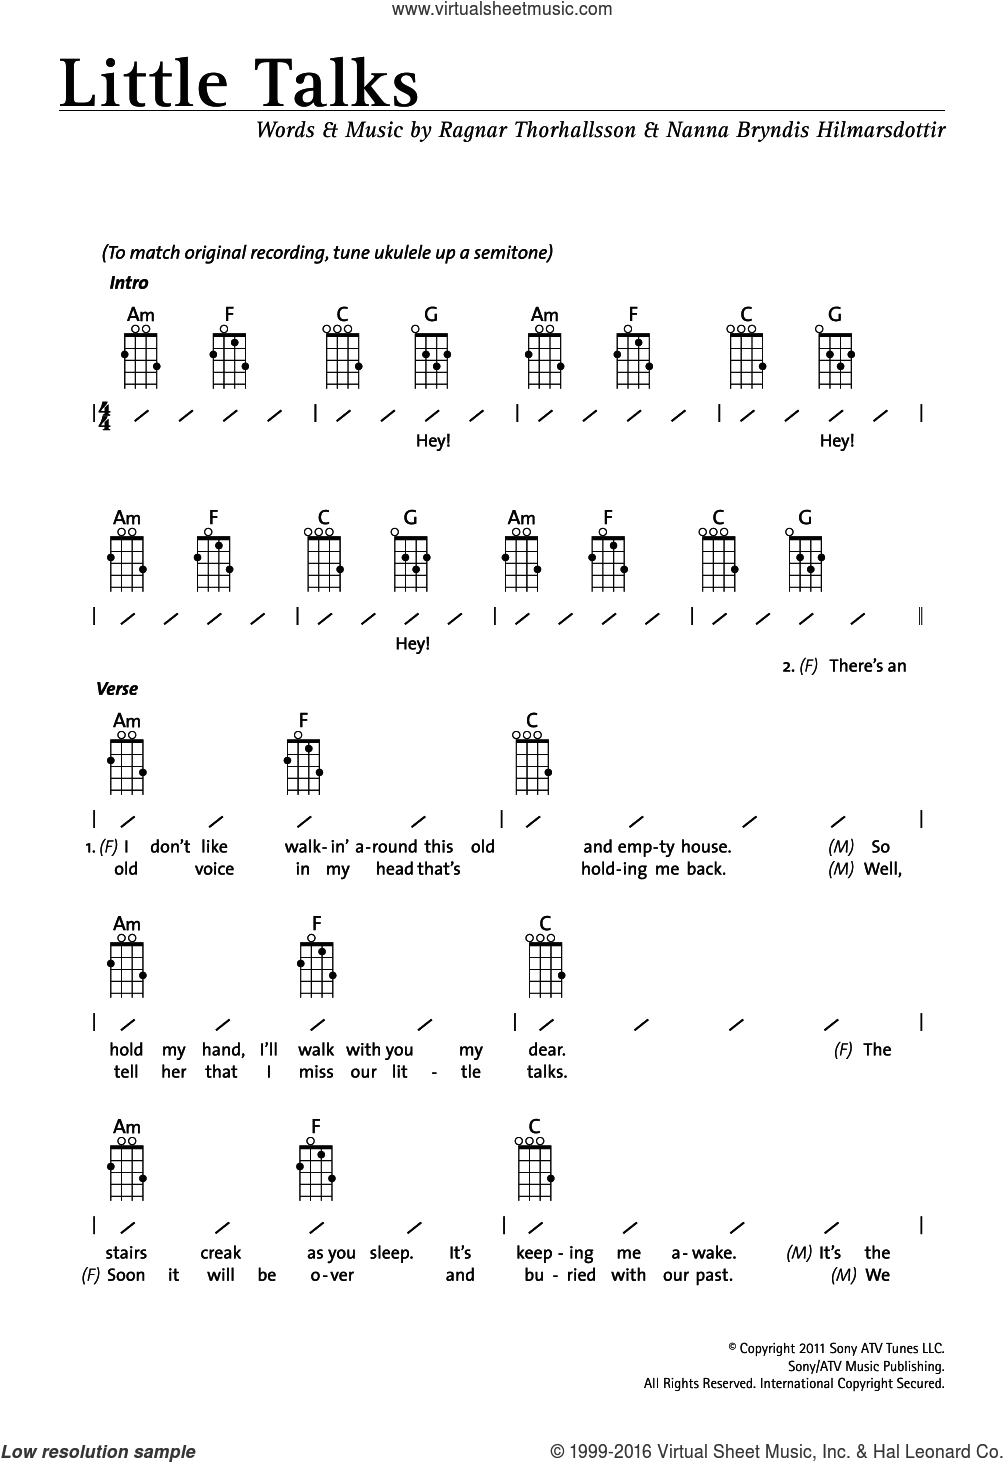 Of Monsters And Men: Little Talks for ukulele (chords), intermediate sheet ...